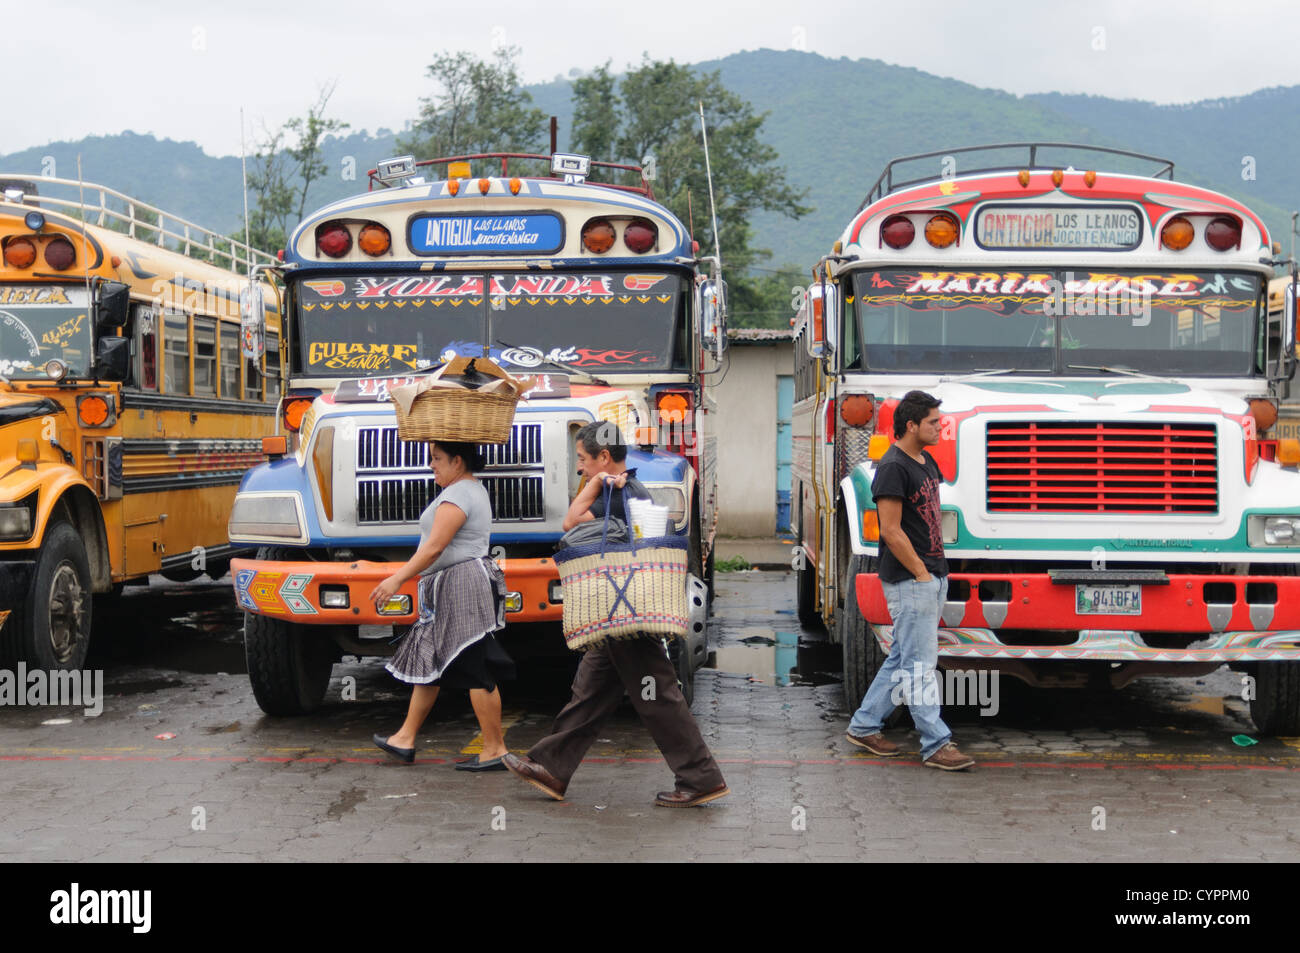 ANTIGUA, Guatemala - Passagiere vor der geparkten Huhn Busse hinter dem Mercado Municipal (Stadt) in Antigua, Guatemala. Aus diesem umfangreichen Central Bus tauschen Sie die Routen strahlenförmig über Guatemala. Oft bunt bemalt, die Hühner Busse nachgerüstet Amerikanischen Schulbusse und ein billiges Verkehrsmittel im ganzen Land. Stockfoto